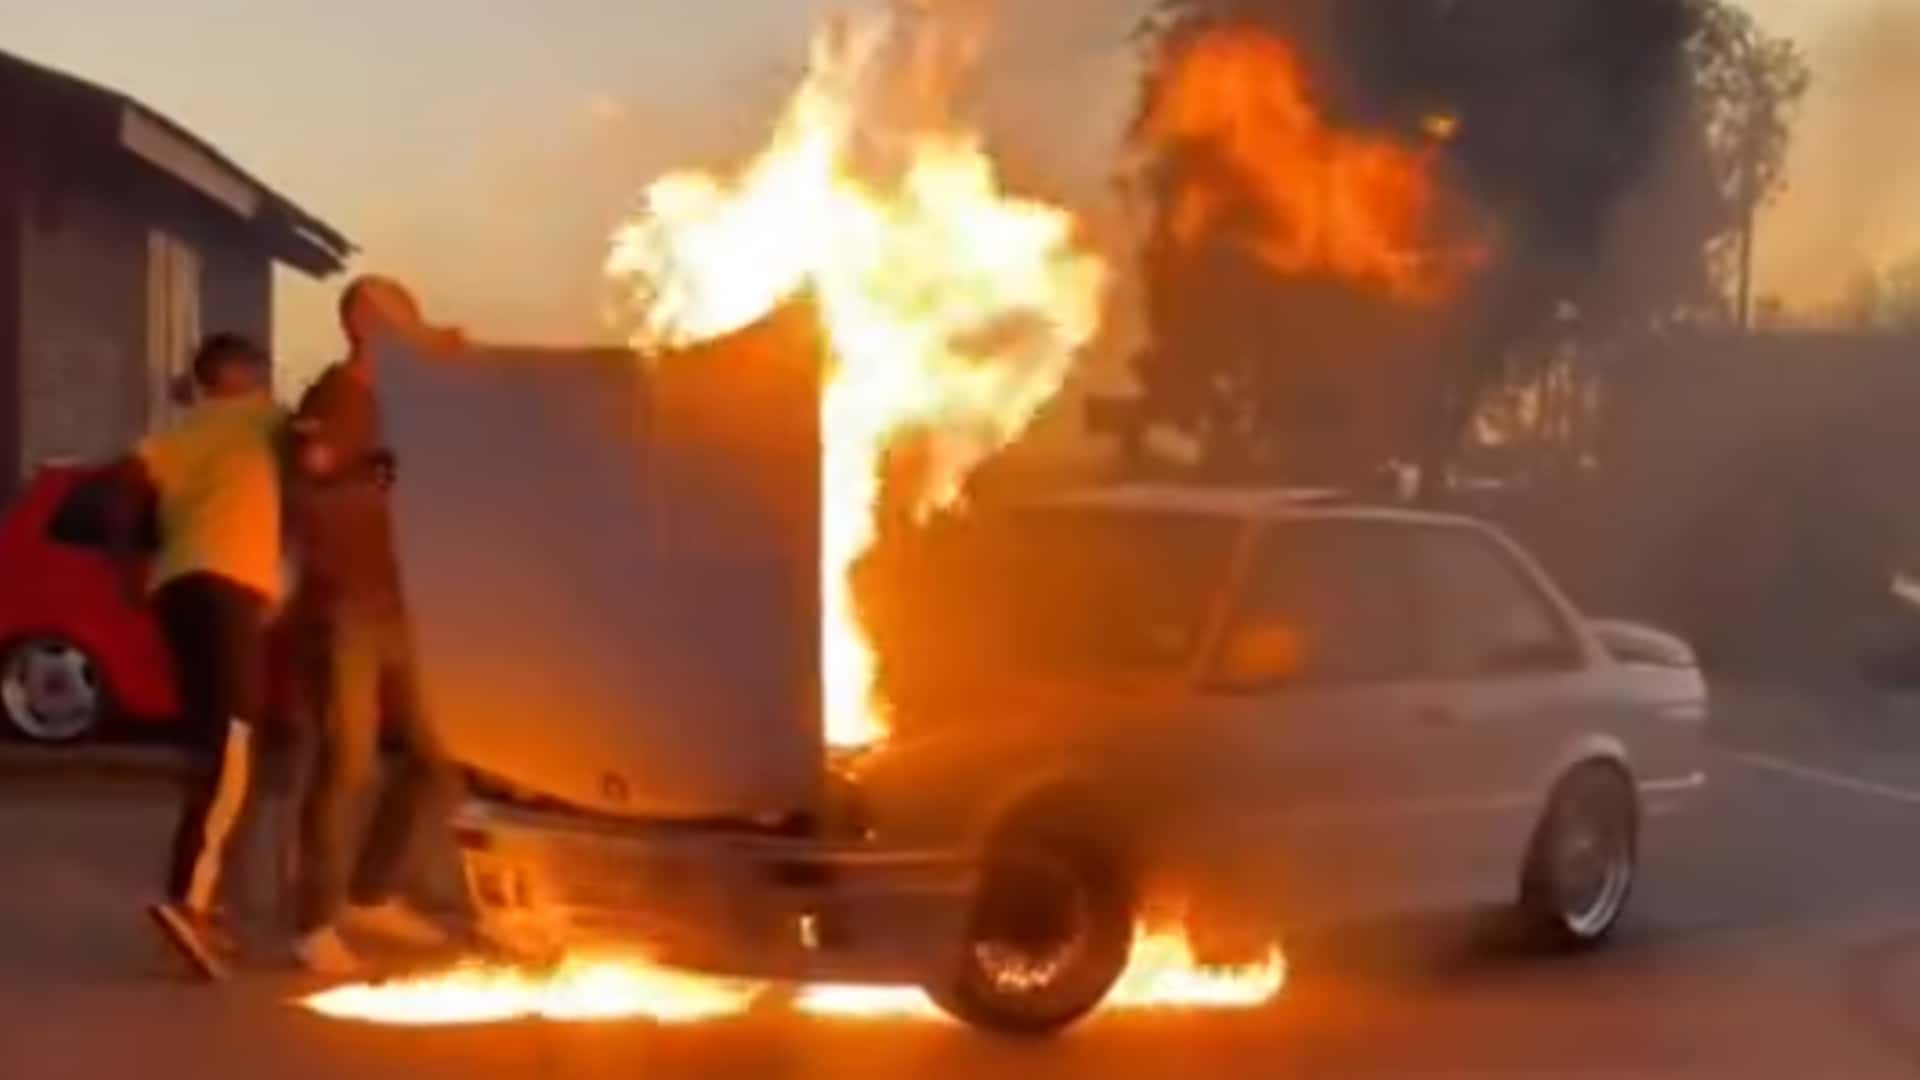 hier geht ein makelloser bmw e30 in flammen auf